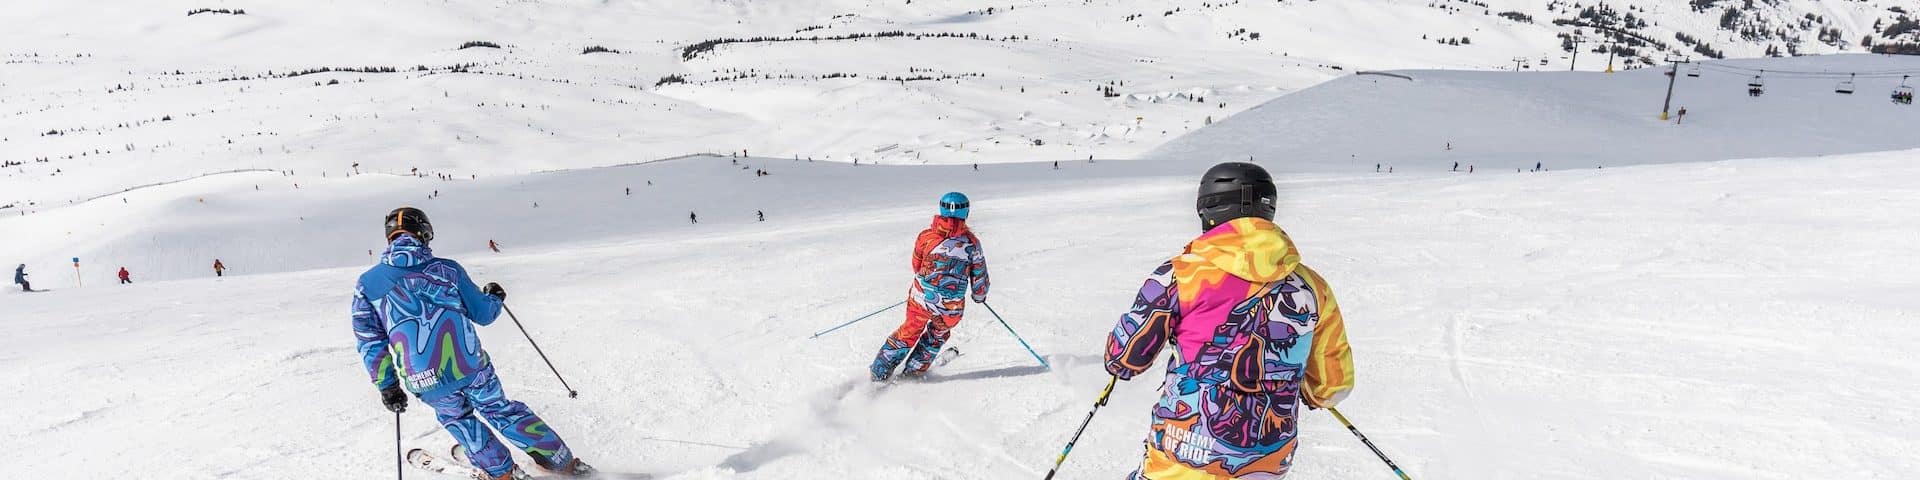 ski fond ski rando différences